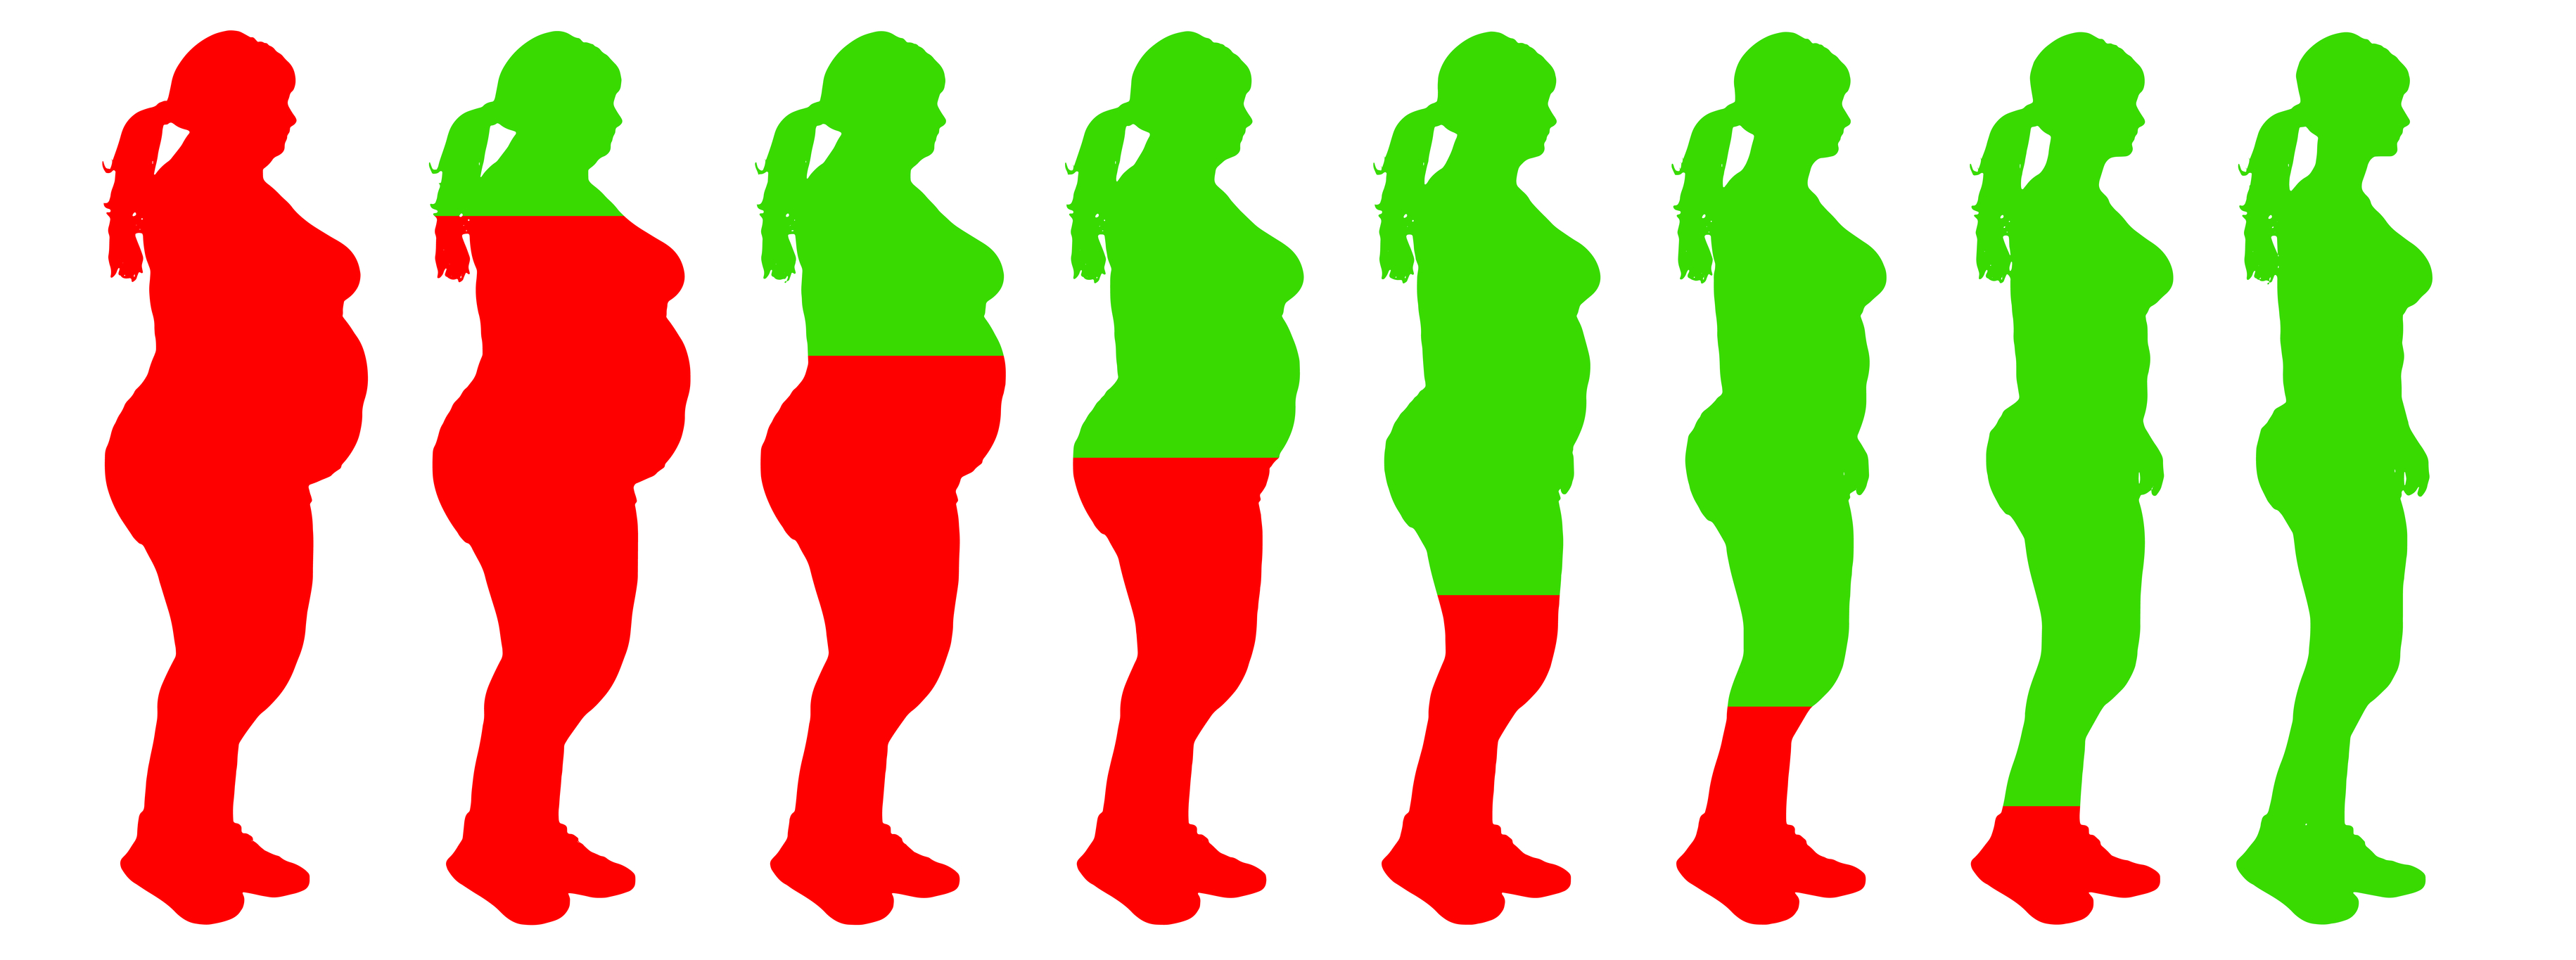 Θυρεοειδής και σωματικό βάρος: τι πρέπει να γνωρίζουμε | Δρ. Μανωλόπουλος